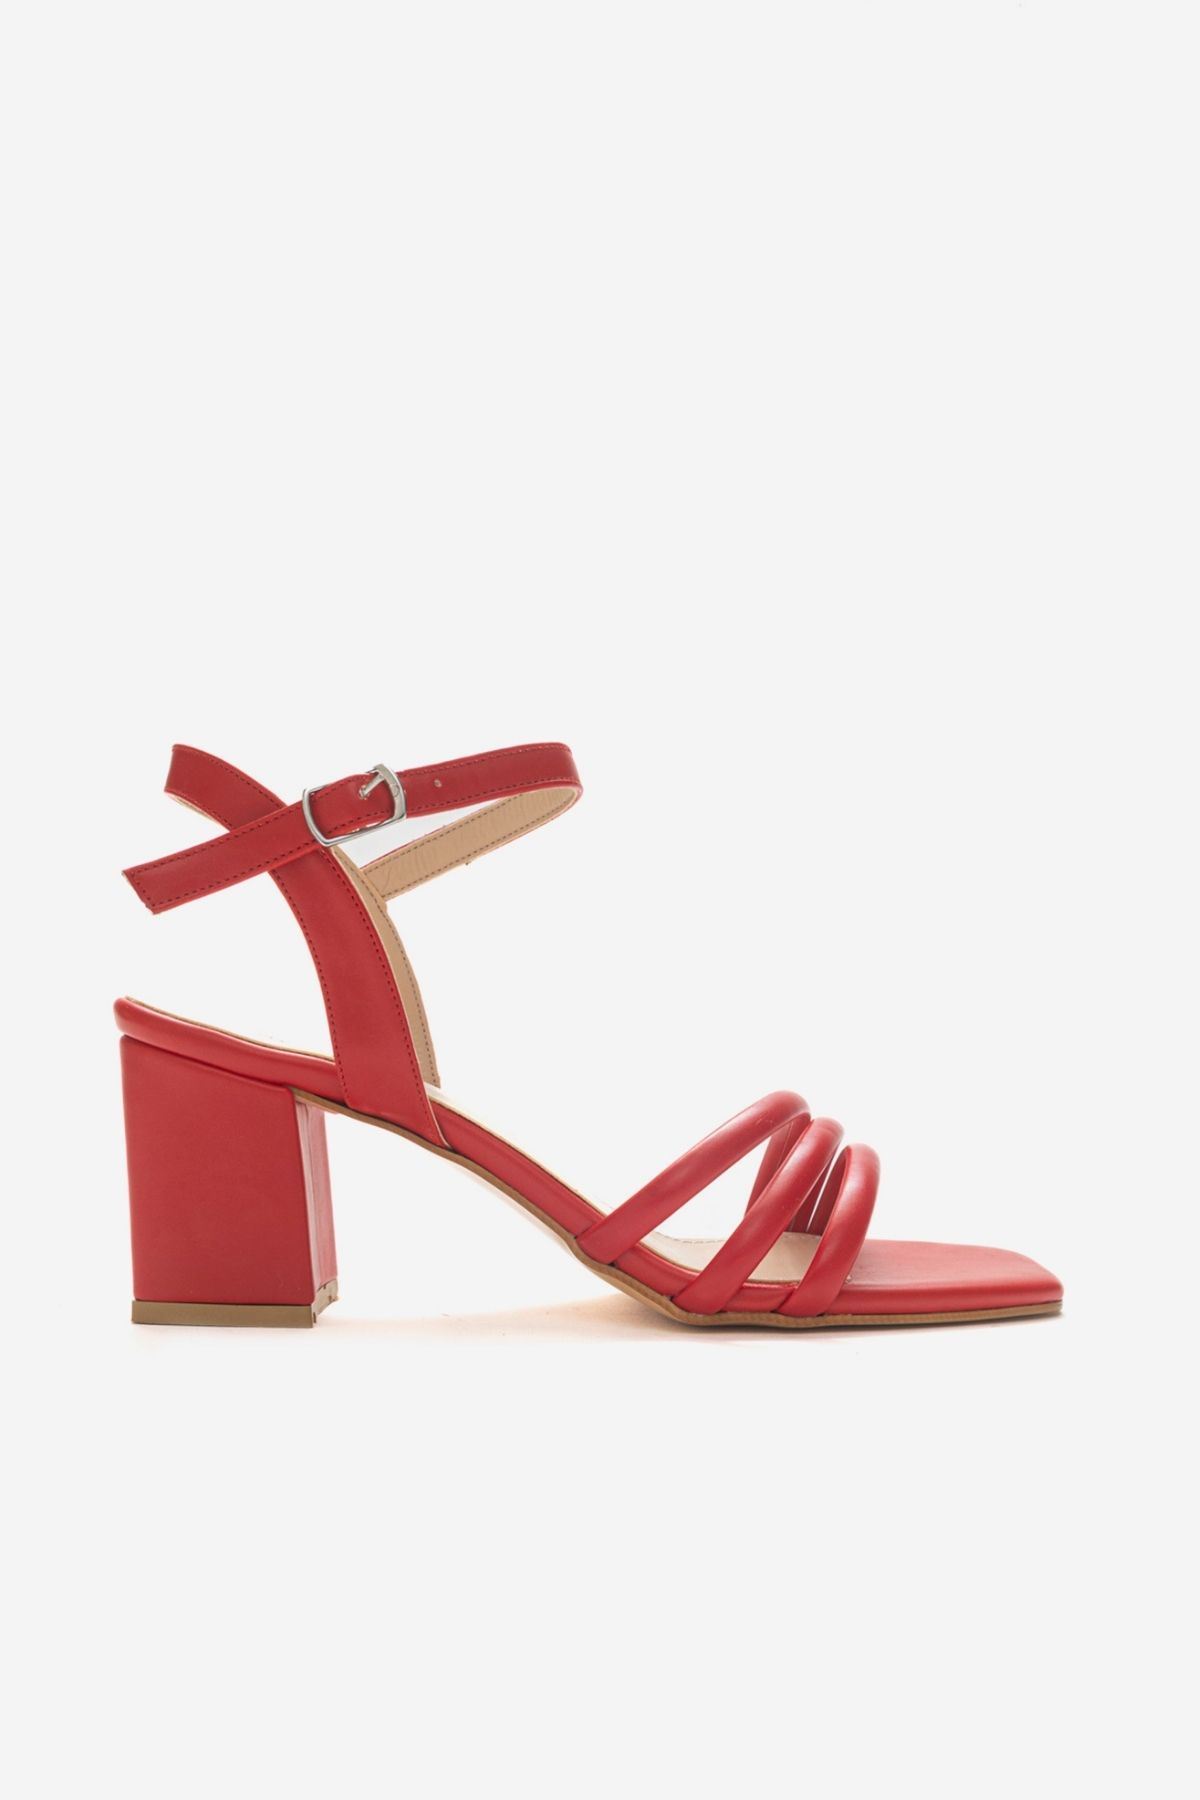 Kadın Bantlı Topuklu Ayakkabı Sandalet Luis Gate Shoes-Kırmızı